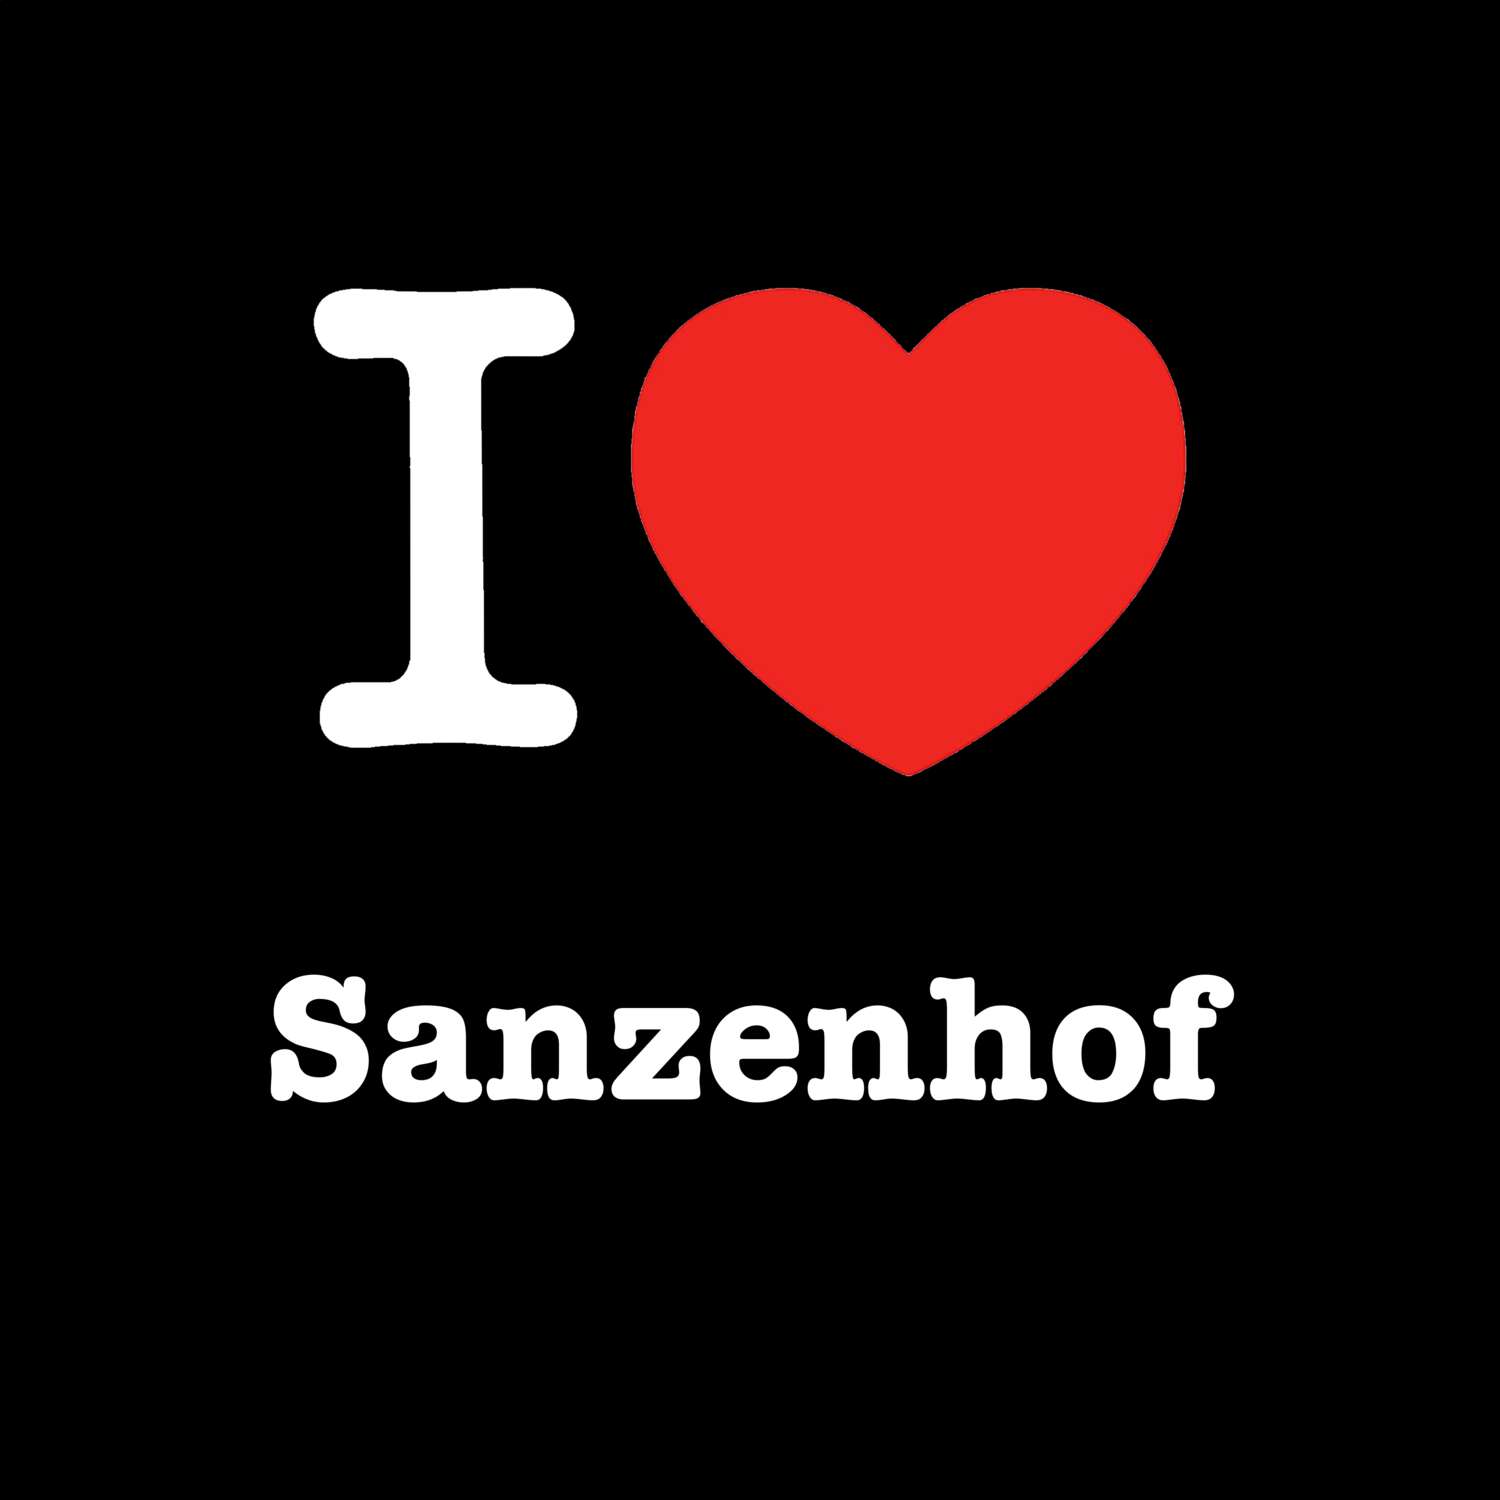 Sanzenhof T-Shirt »I love«